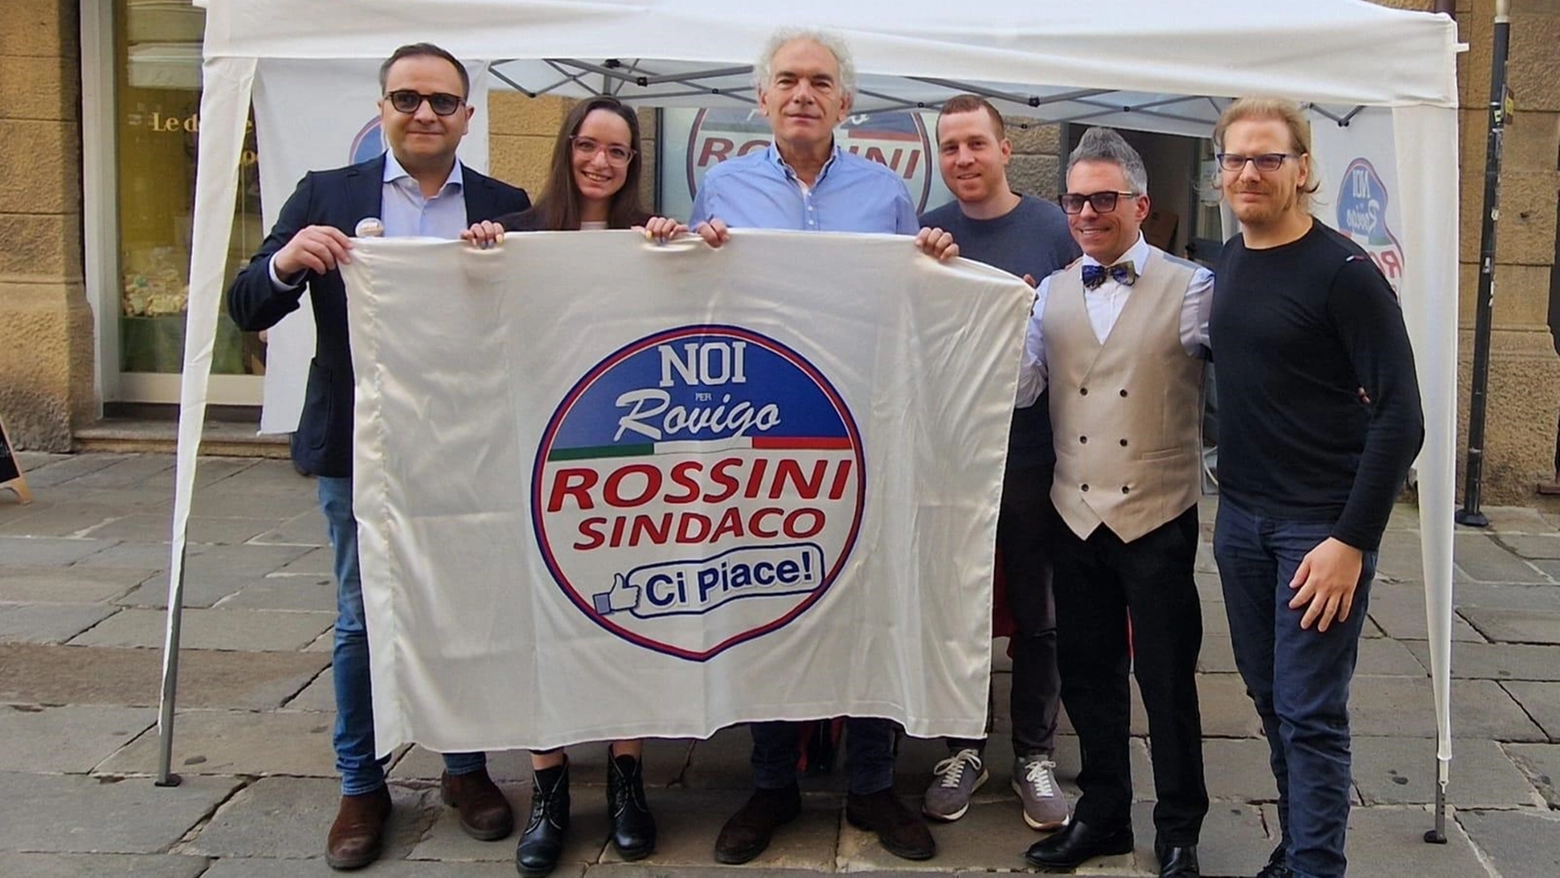 Il progetto civico cambia e diventa “Rovigo ci piace Rossini sindaco” appoggiato dai moderati. Il nuovo candidato ha 61 anni e nel 2019 ha ottenuto il record di preferenze nella minoranza